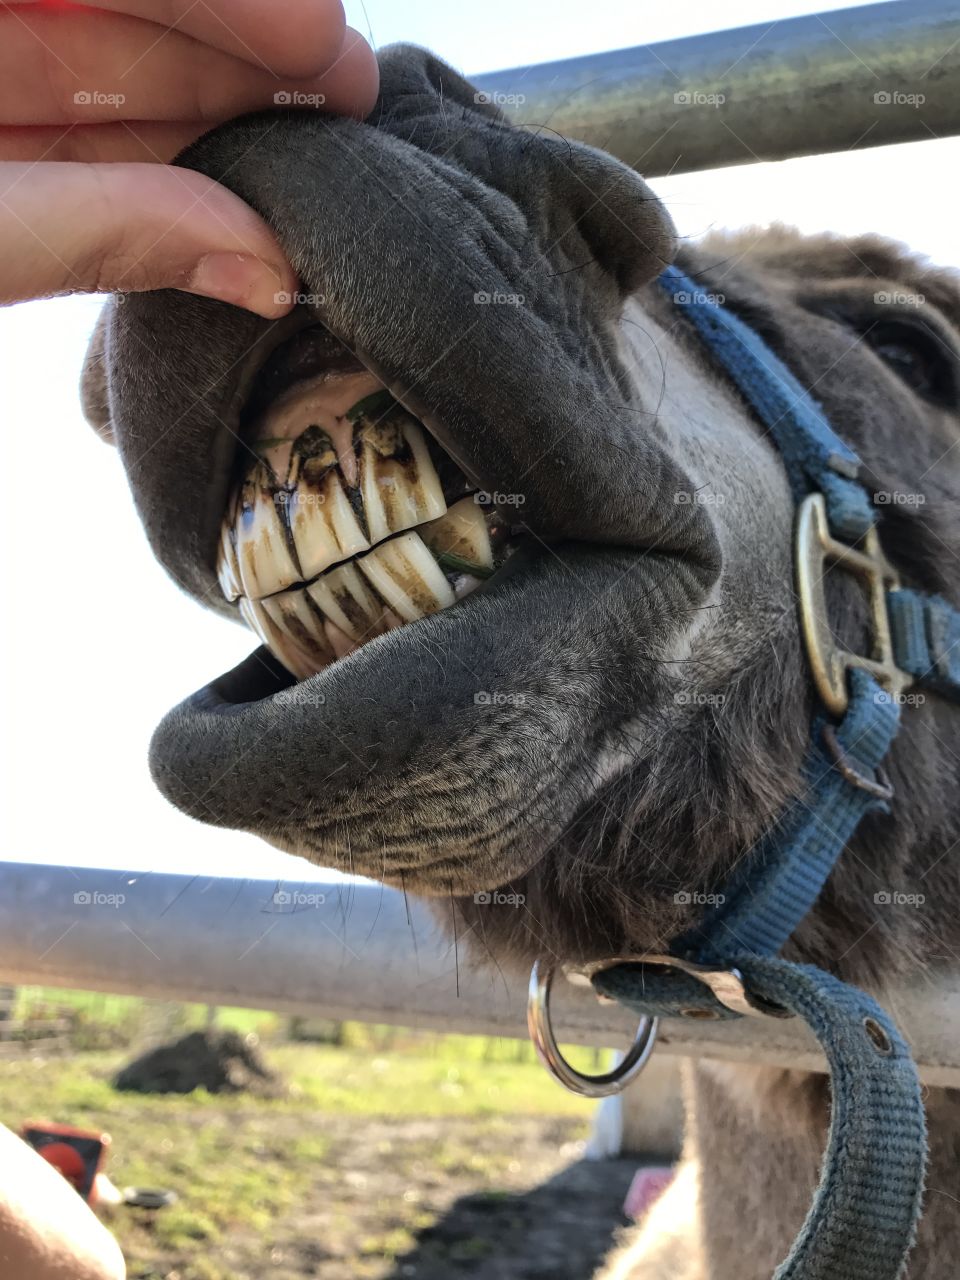 Donkey teeth! 🤣